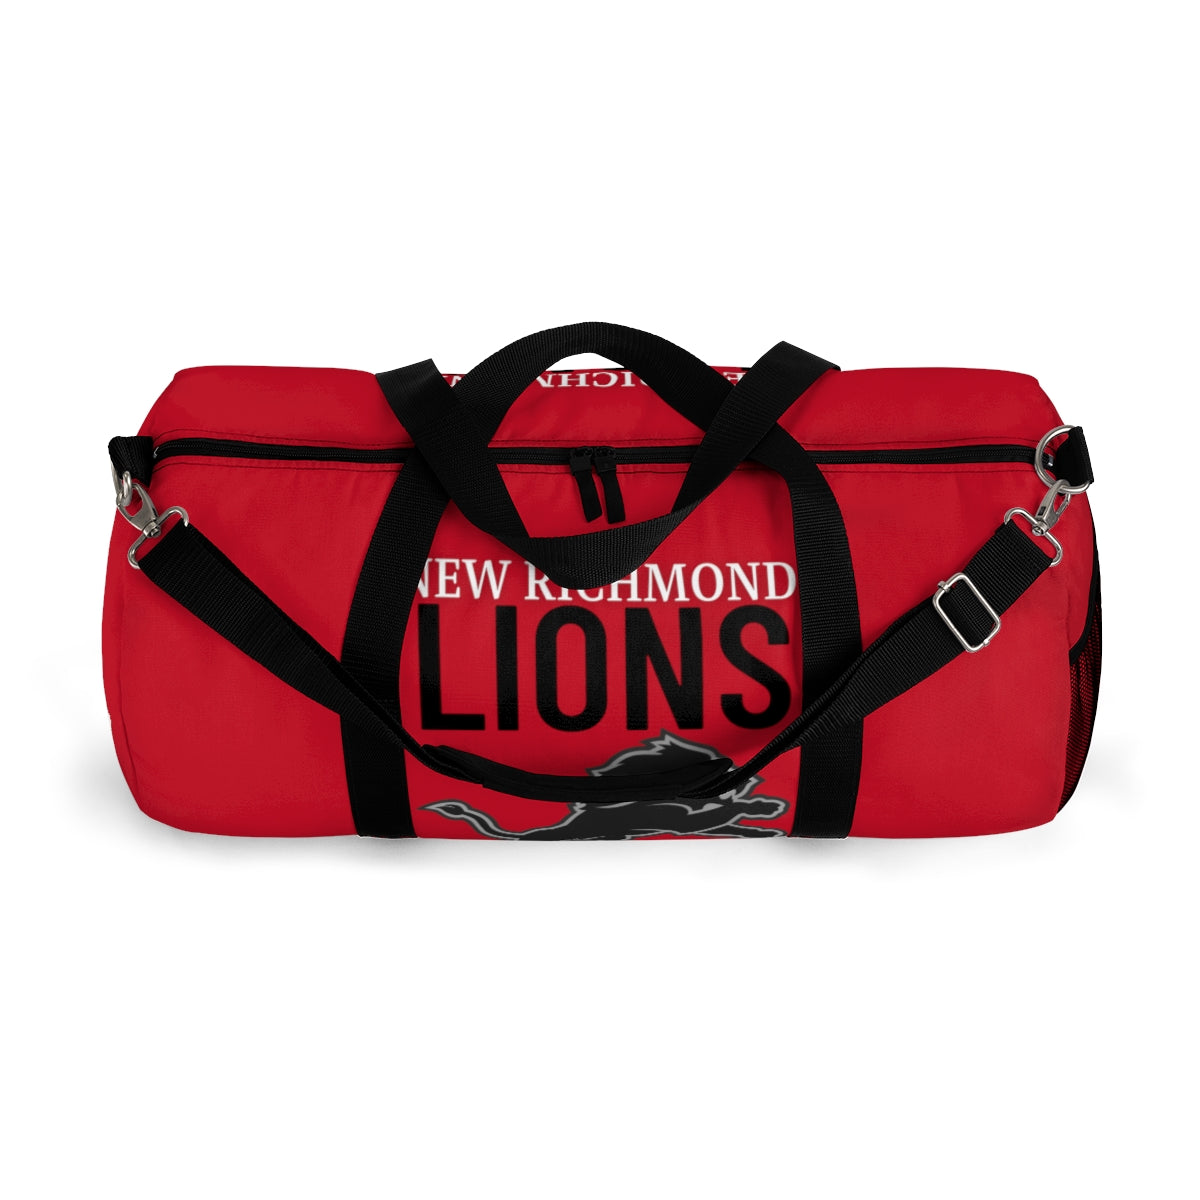 Lions Duffel Bag